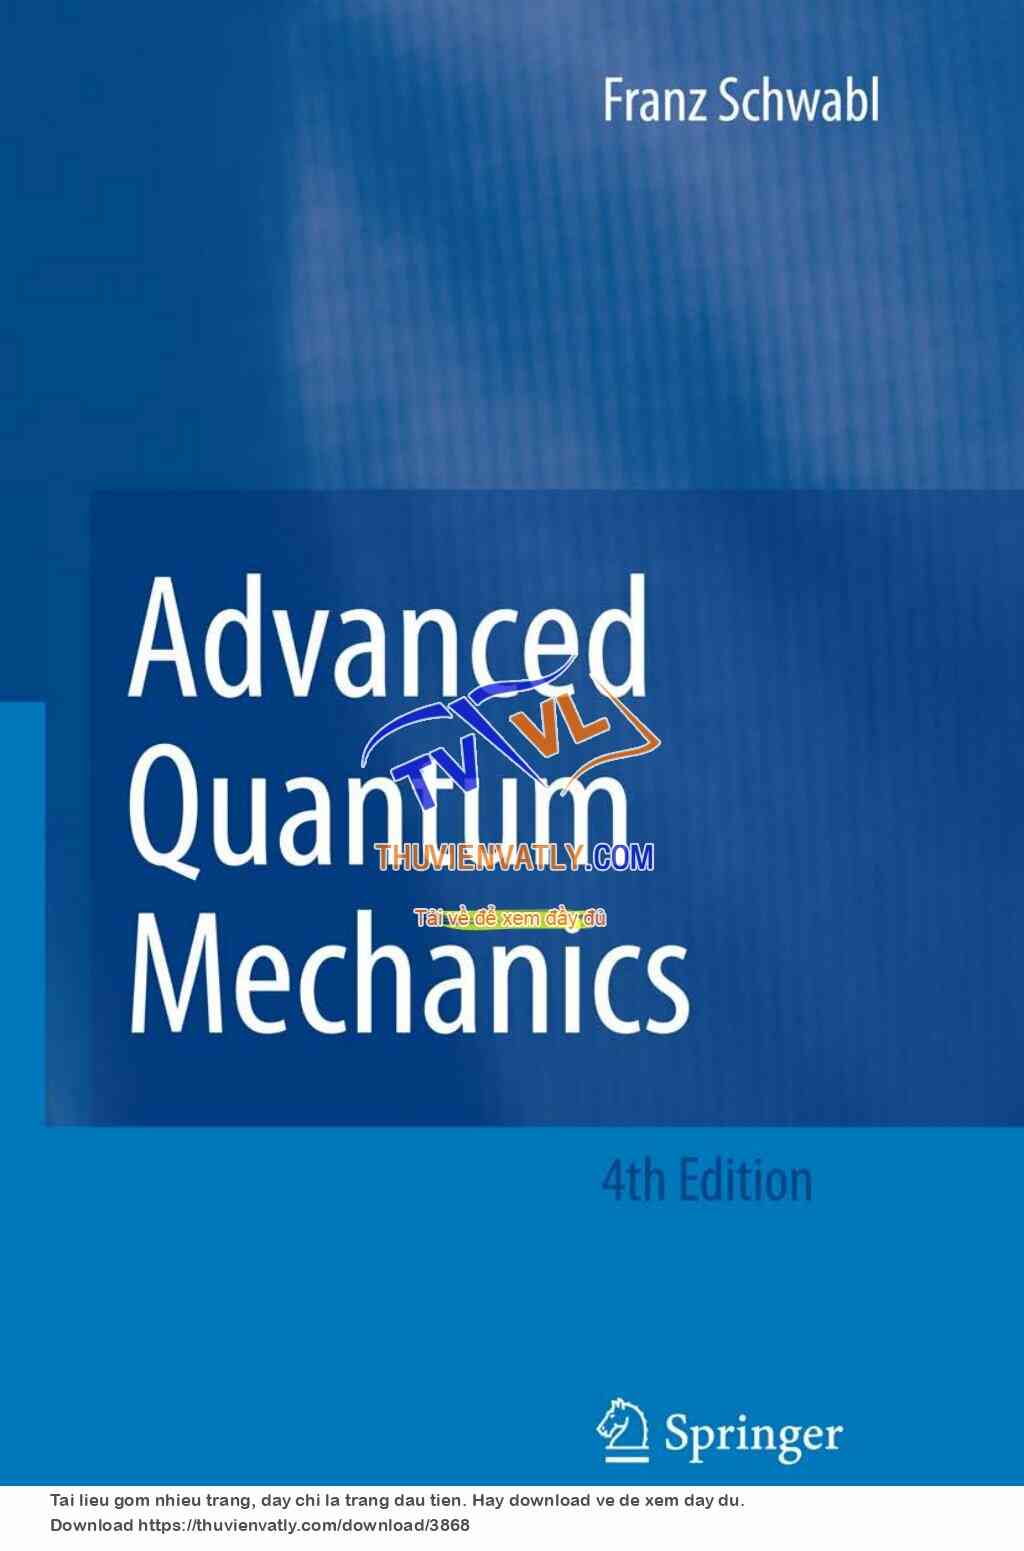 Advanced Quantum Mechanics (Franz Schwabl)